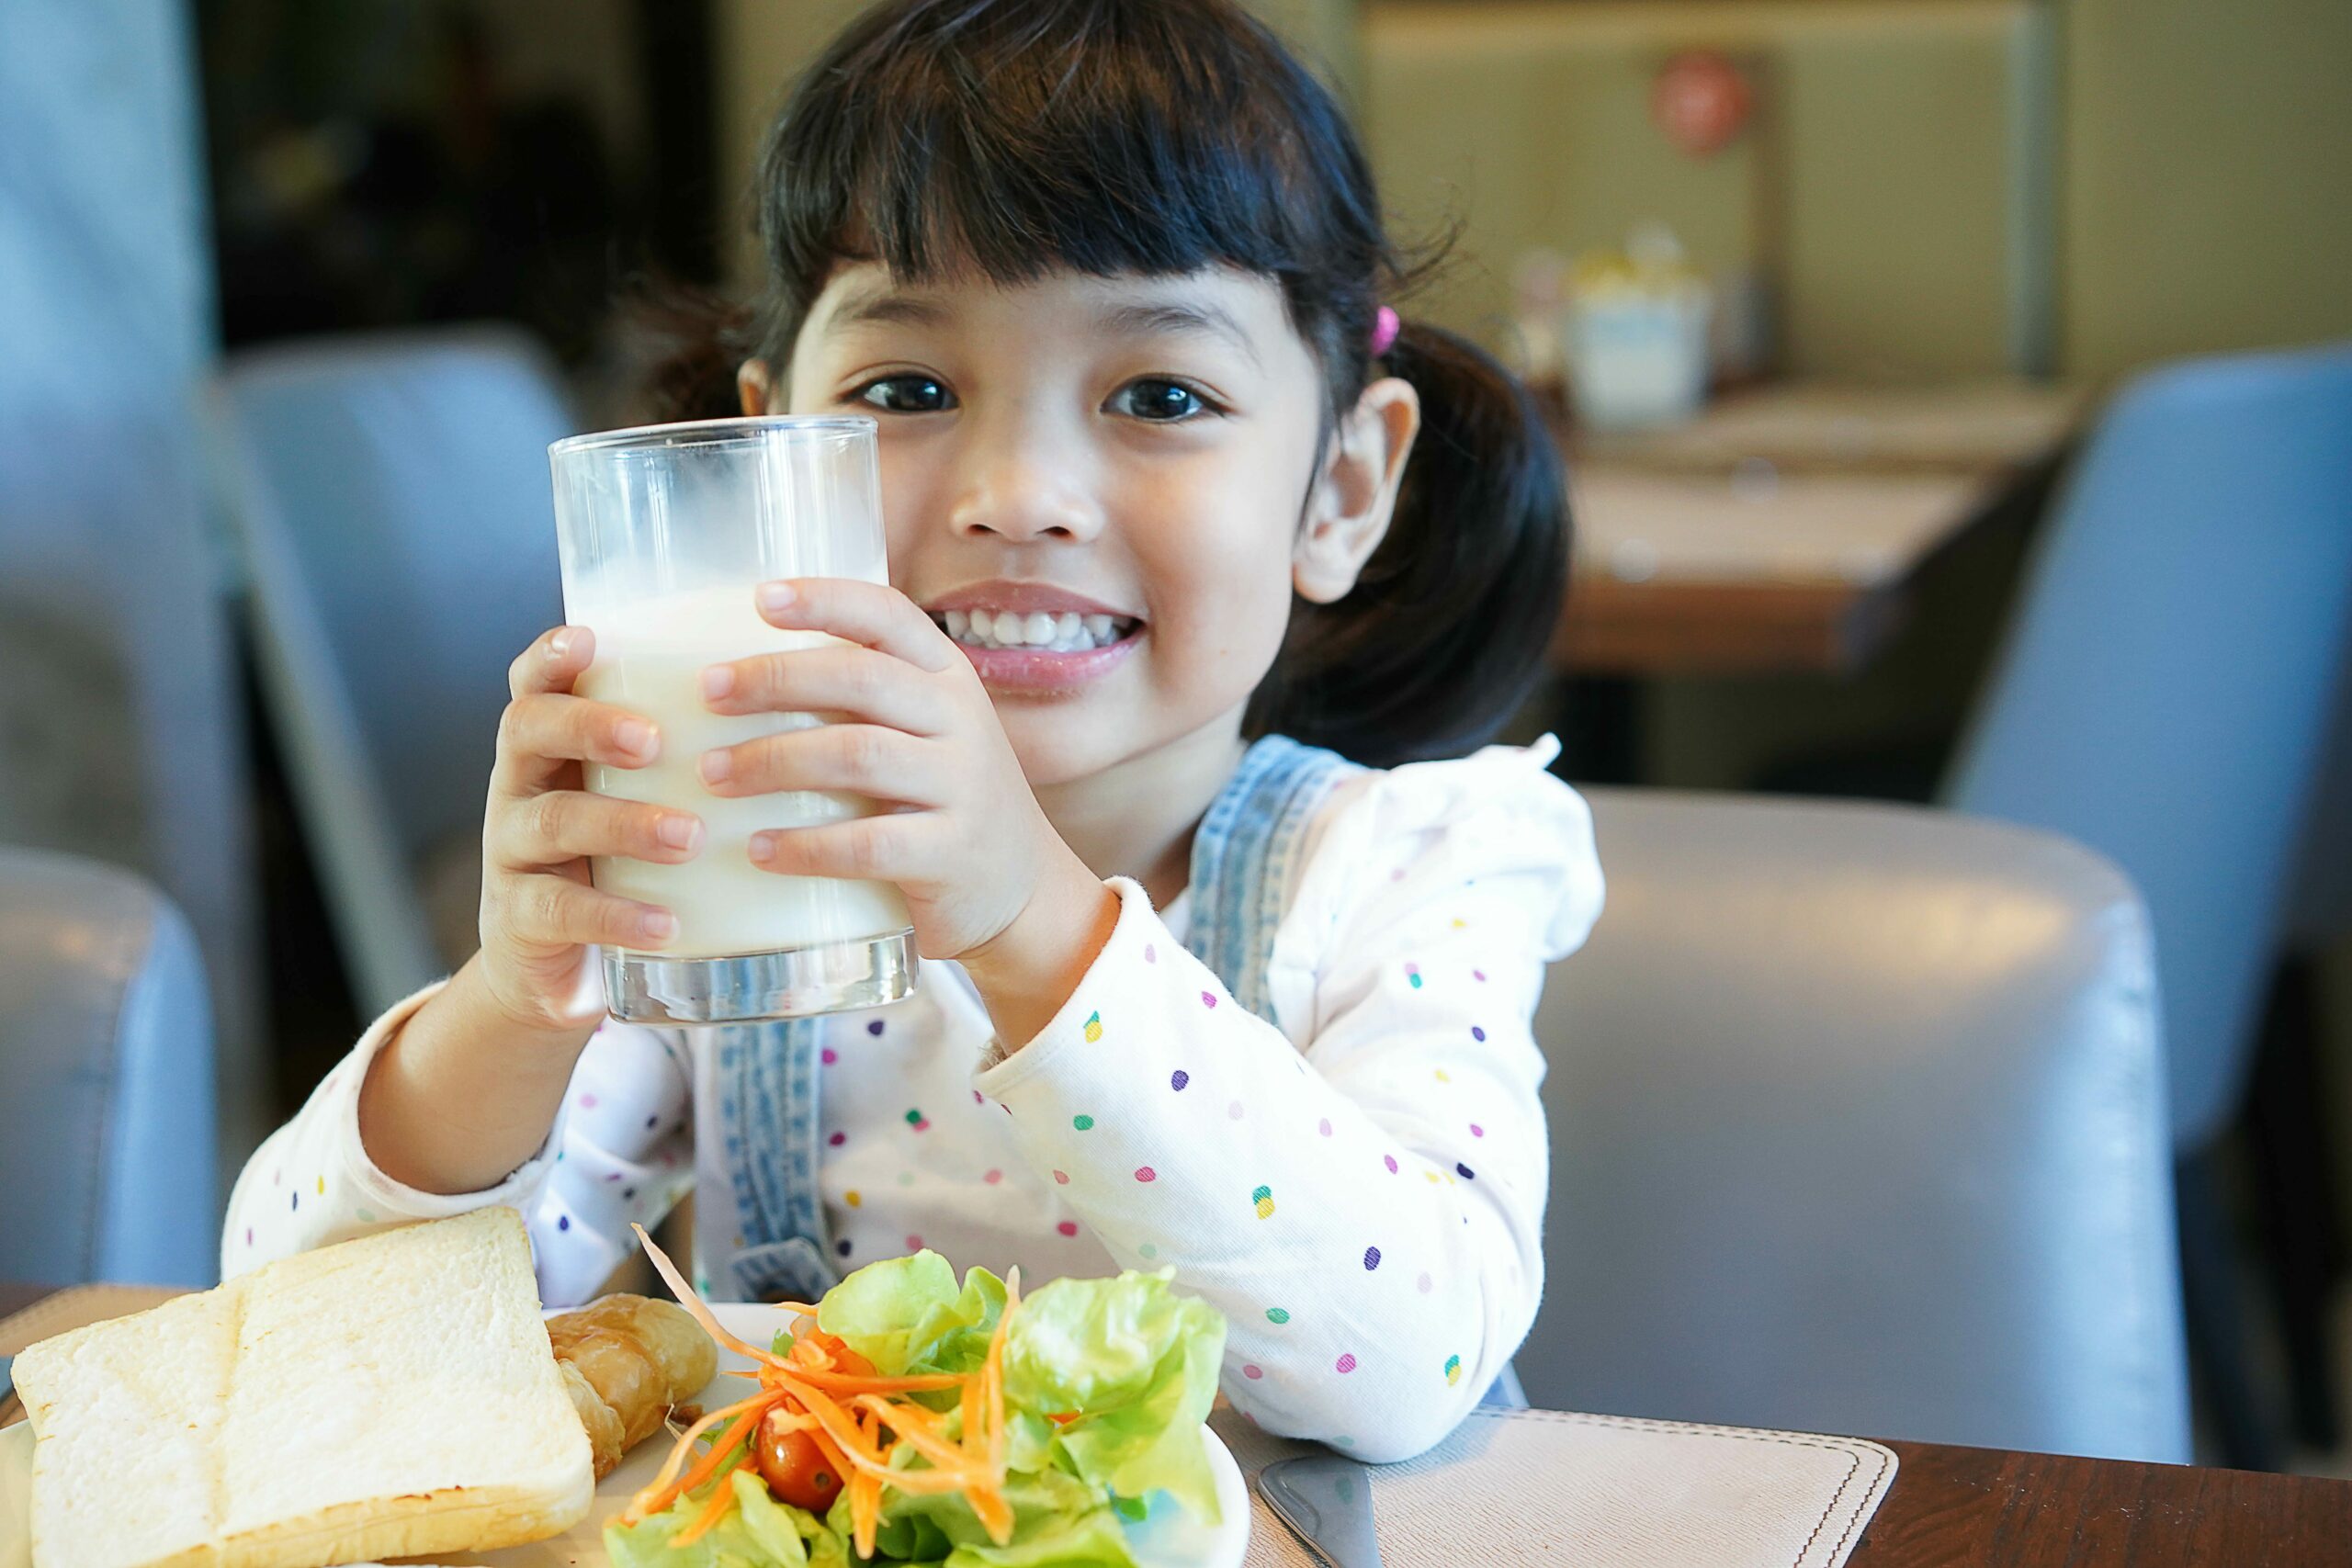 นักวิจัยพบเด็กวัย 1-3 ปี ที่ดื่มนมเสริมอาหารต่อเนื่อง  มีปัญหาขาดสารอาหารรองน้อยกว่าเด็กวัย 4-6 อย่างมีนัยสำคัญ - มติชนสุดสัปดาห์